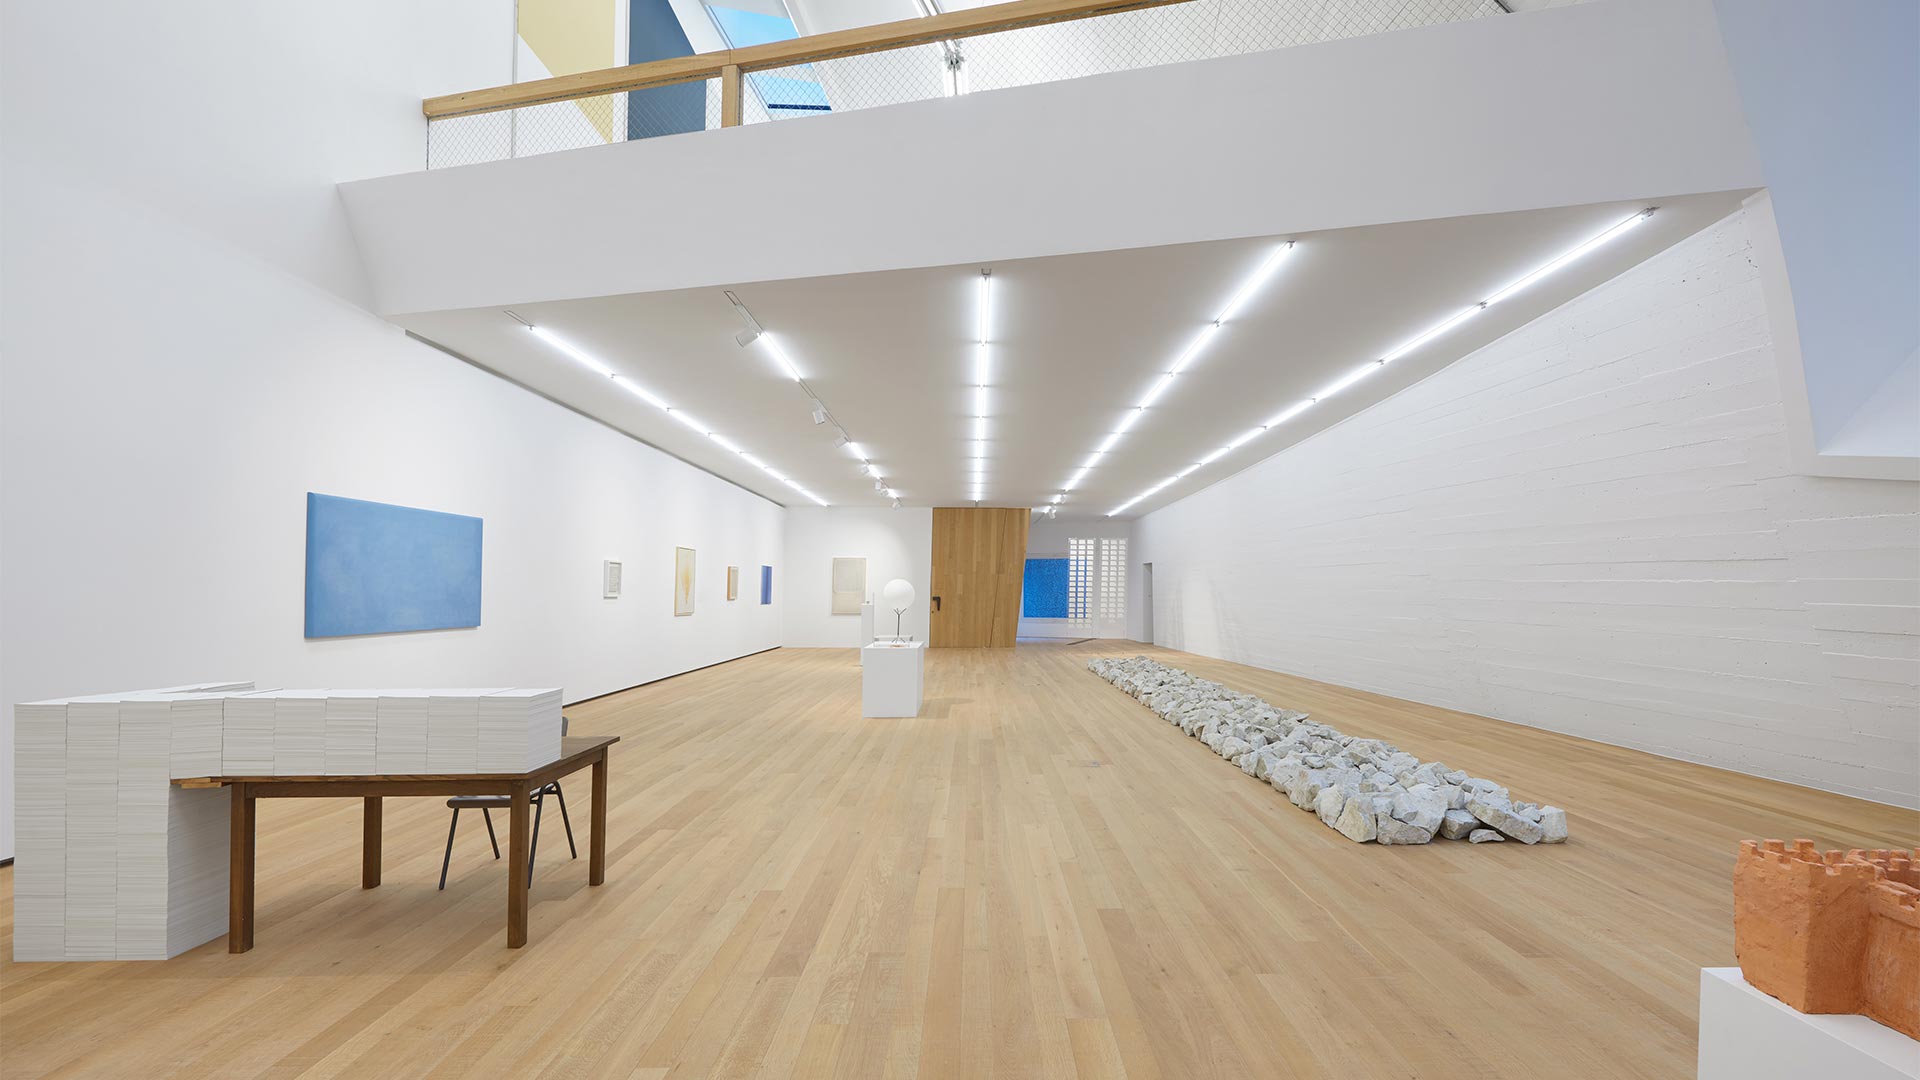 Ein mit LED beleuchteter Museumsraum, mit zeitgenössischen Installationen und Gemälden, empfängt die Besucher.